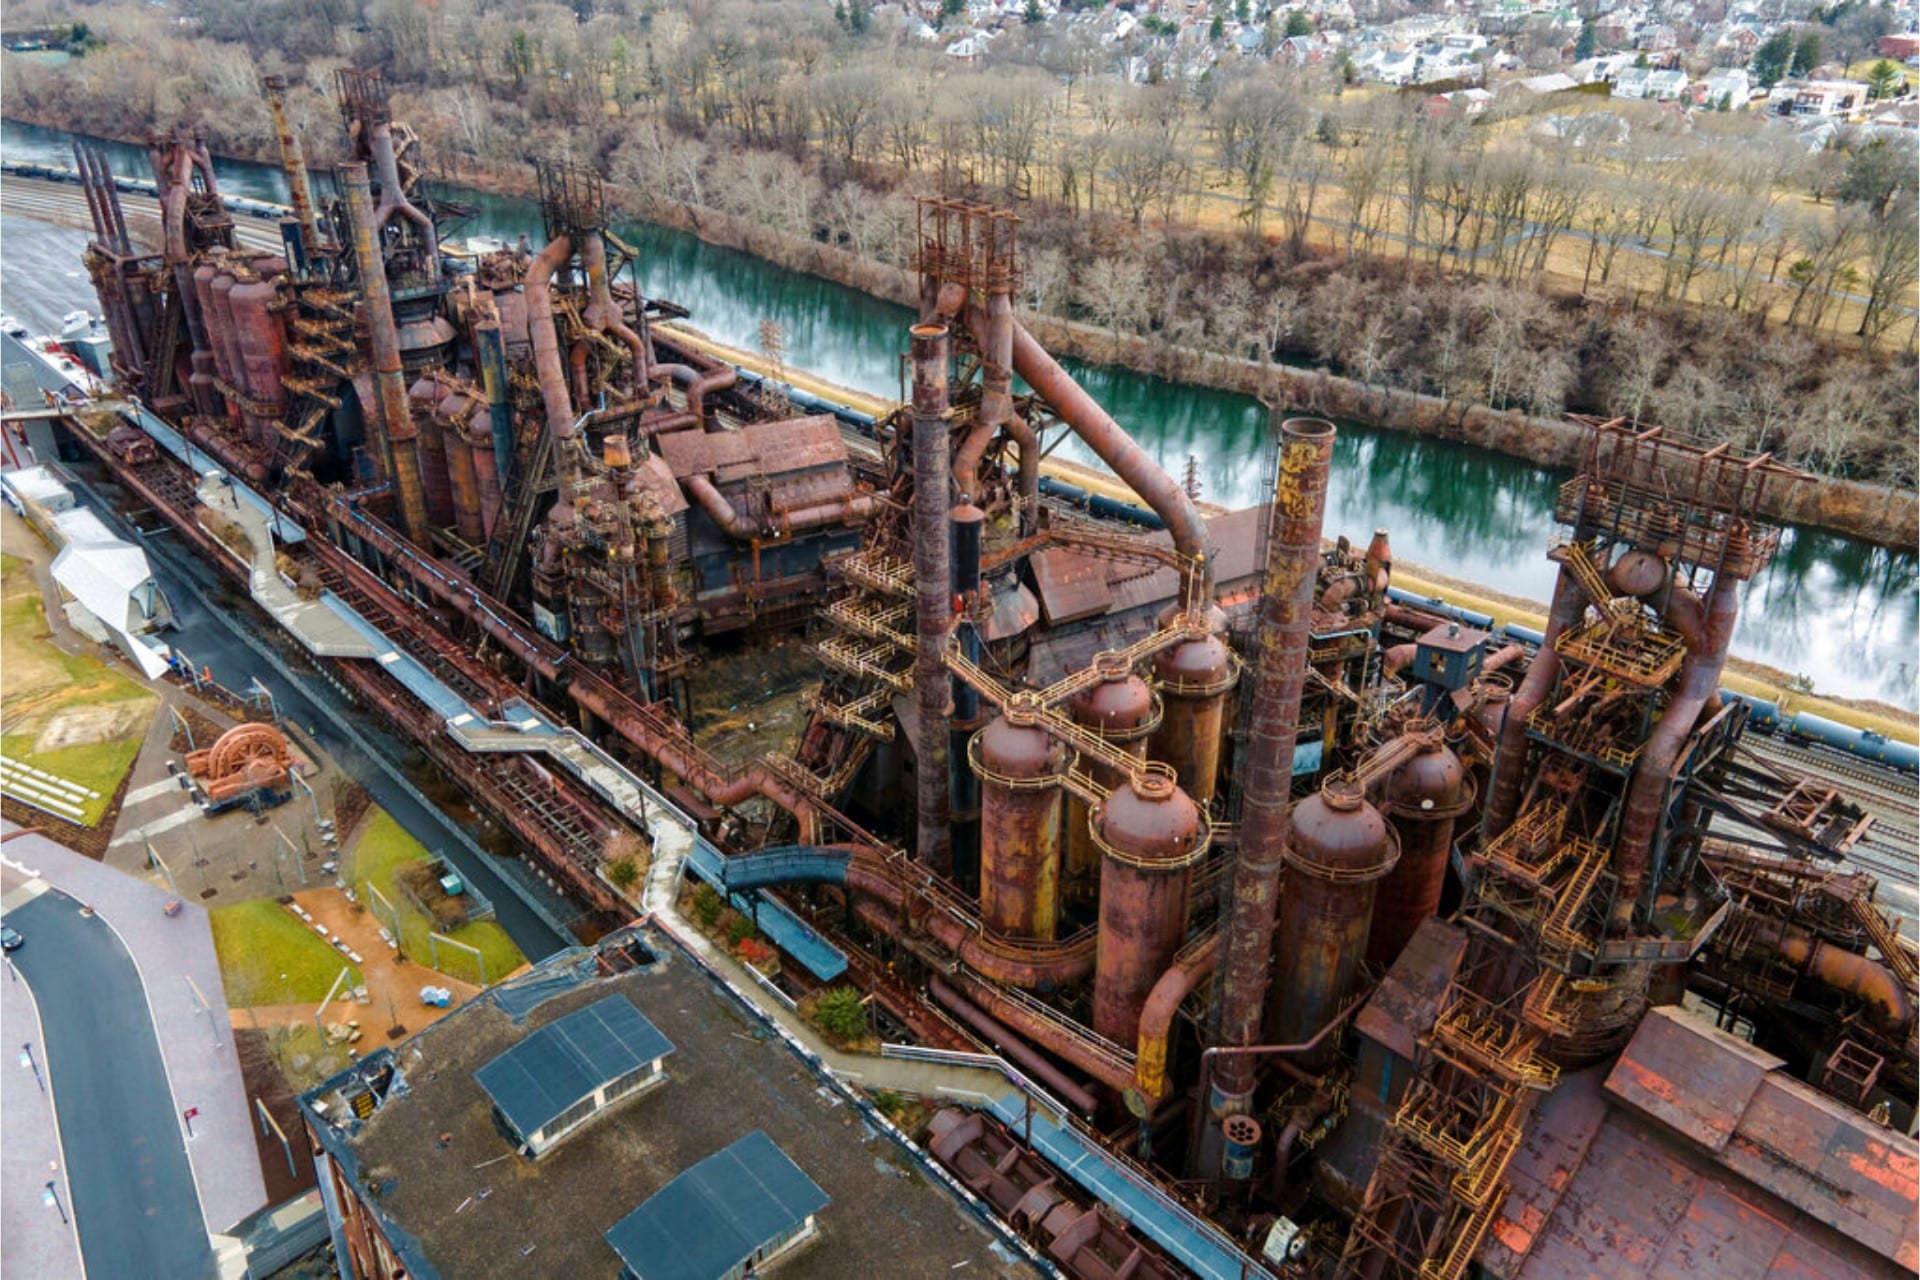 Bethlehem Steel Company blast furnaces